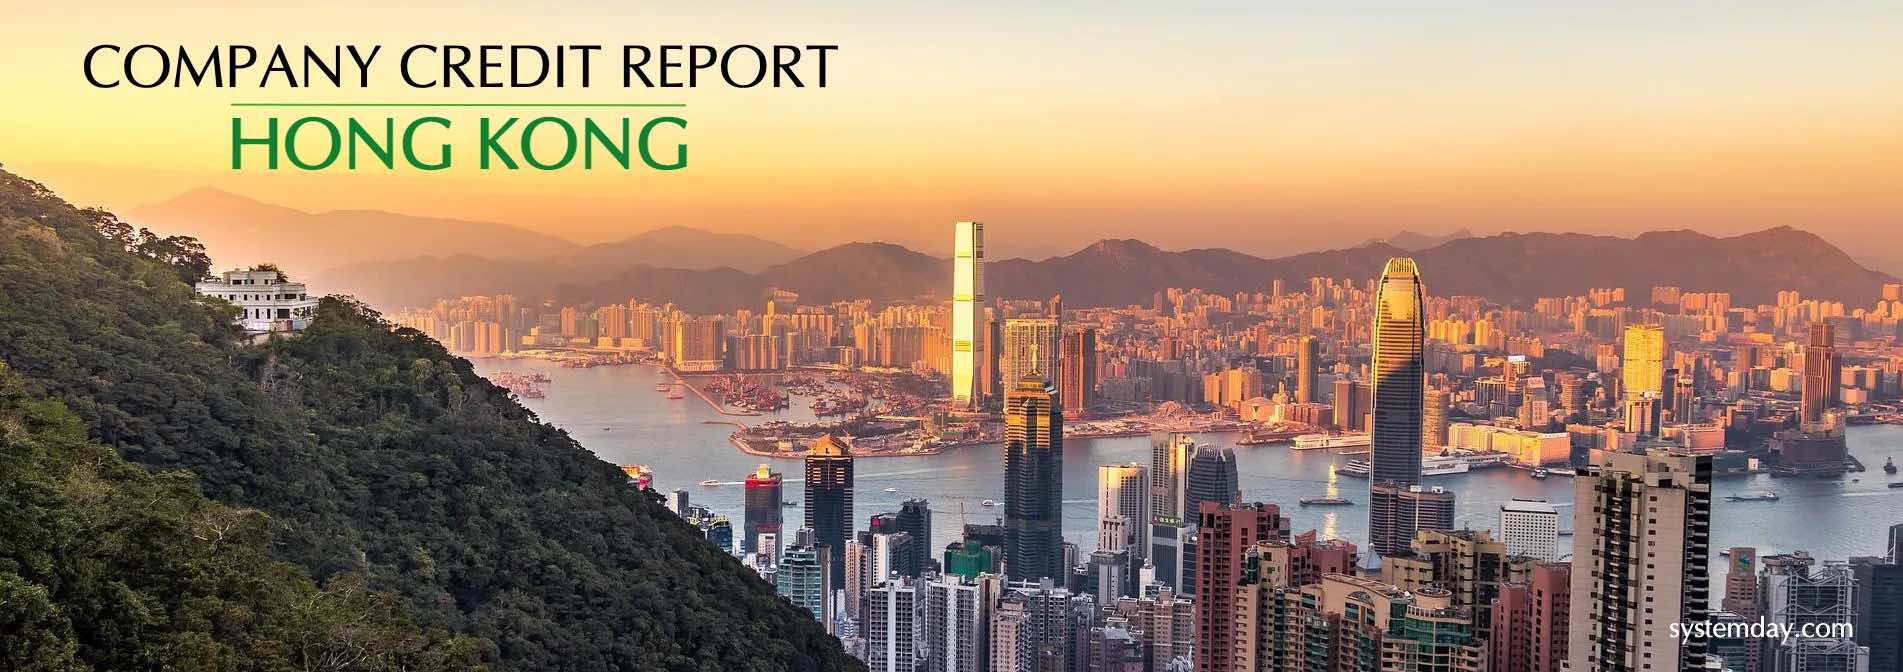 Hong Kong Company Credit Report